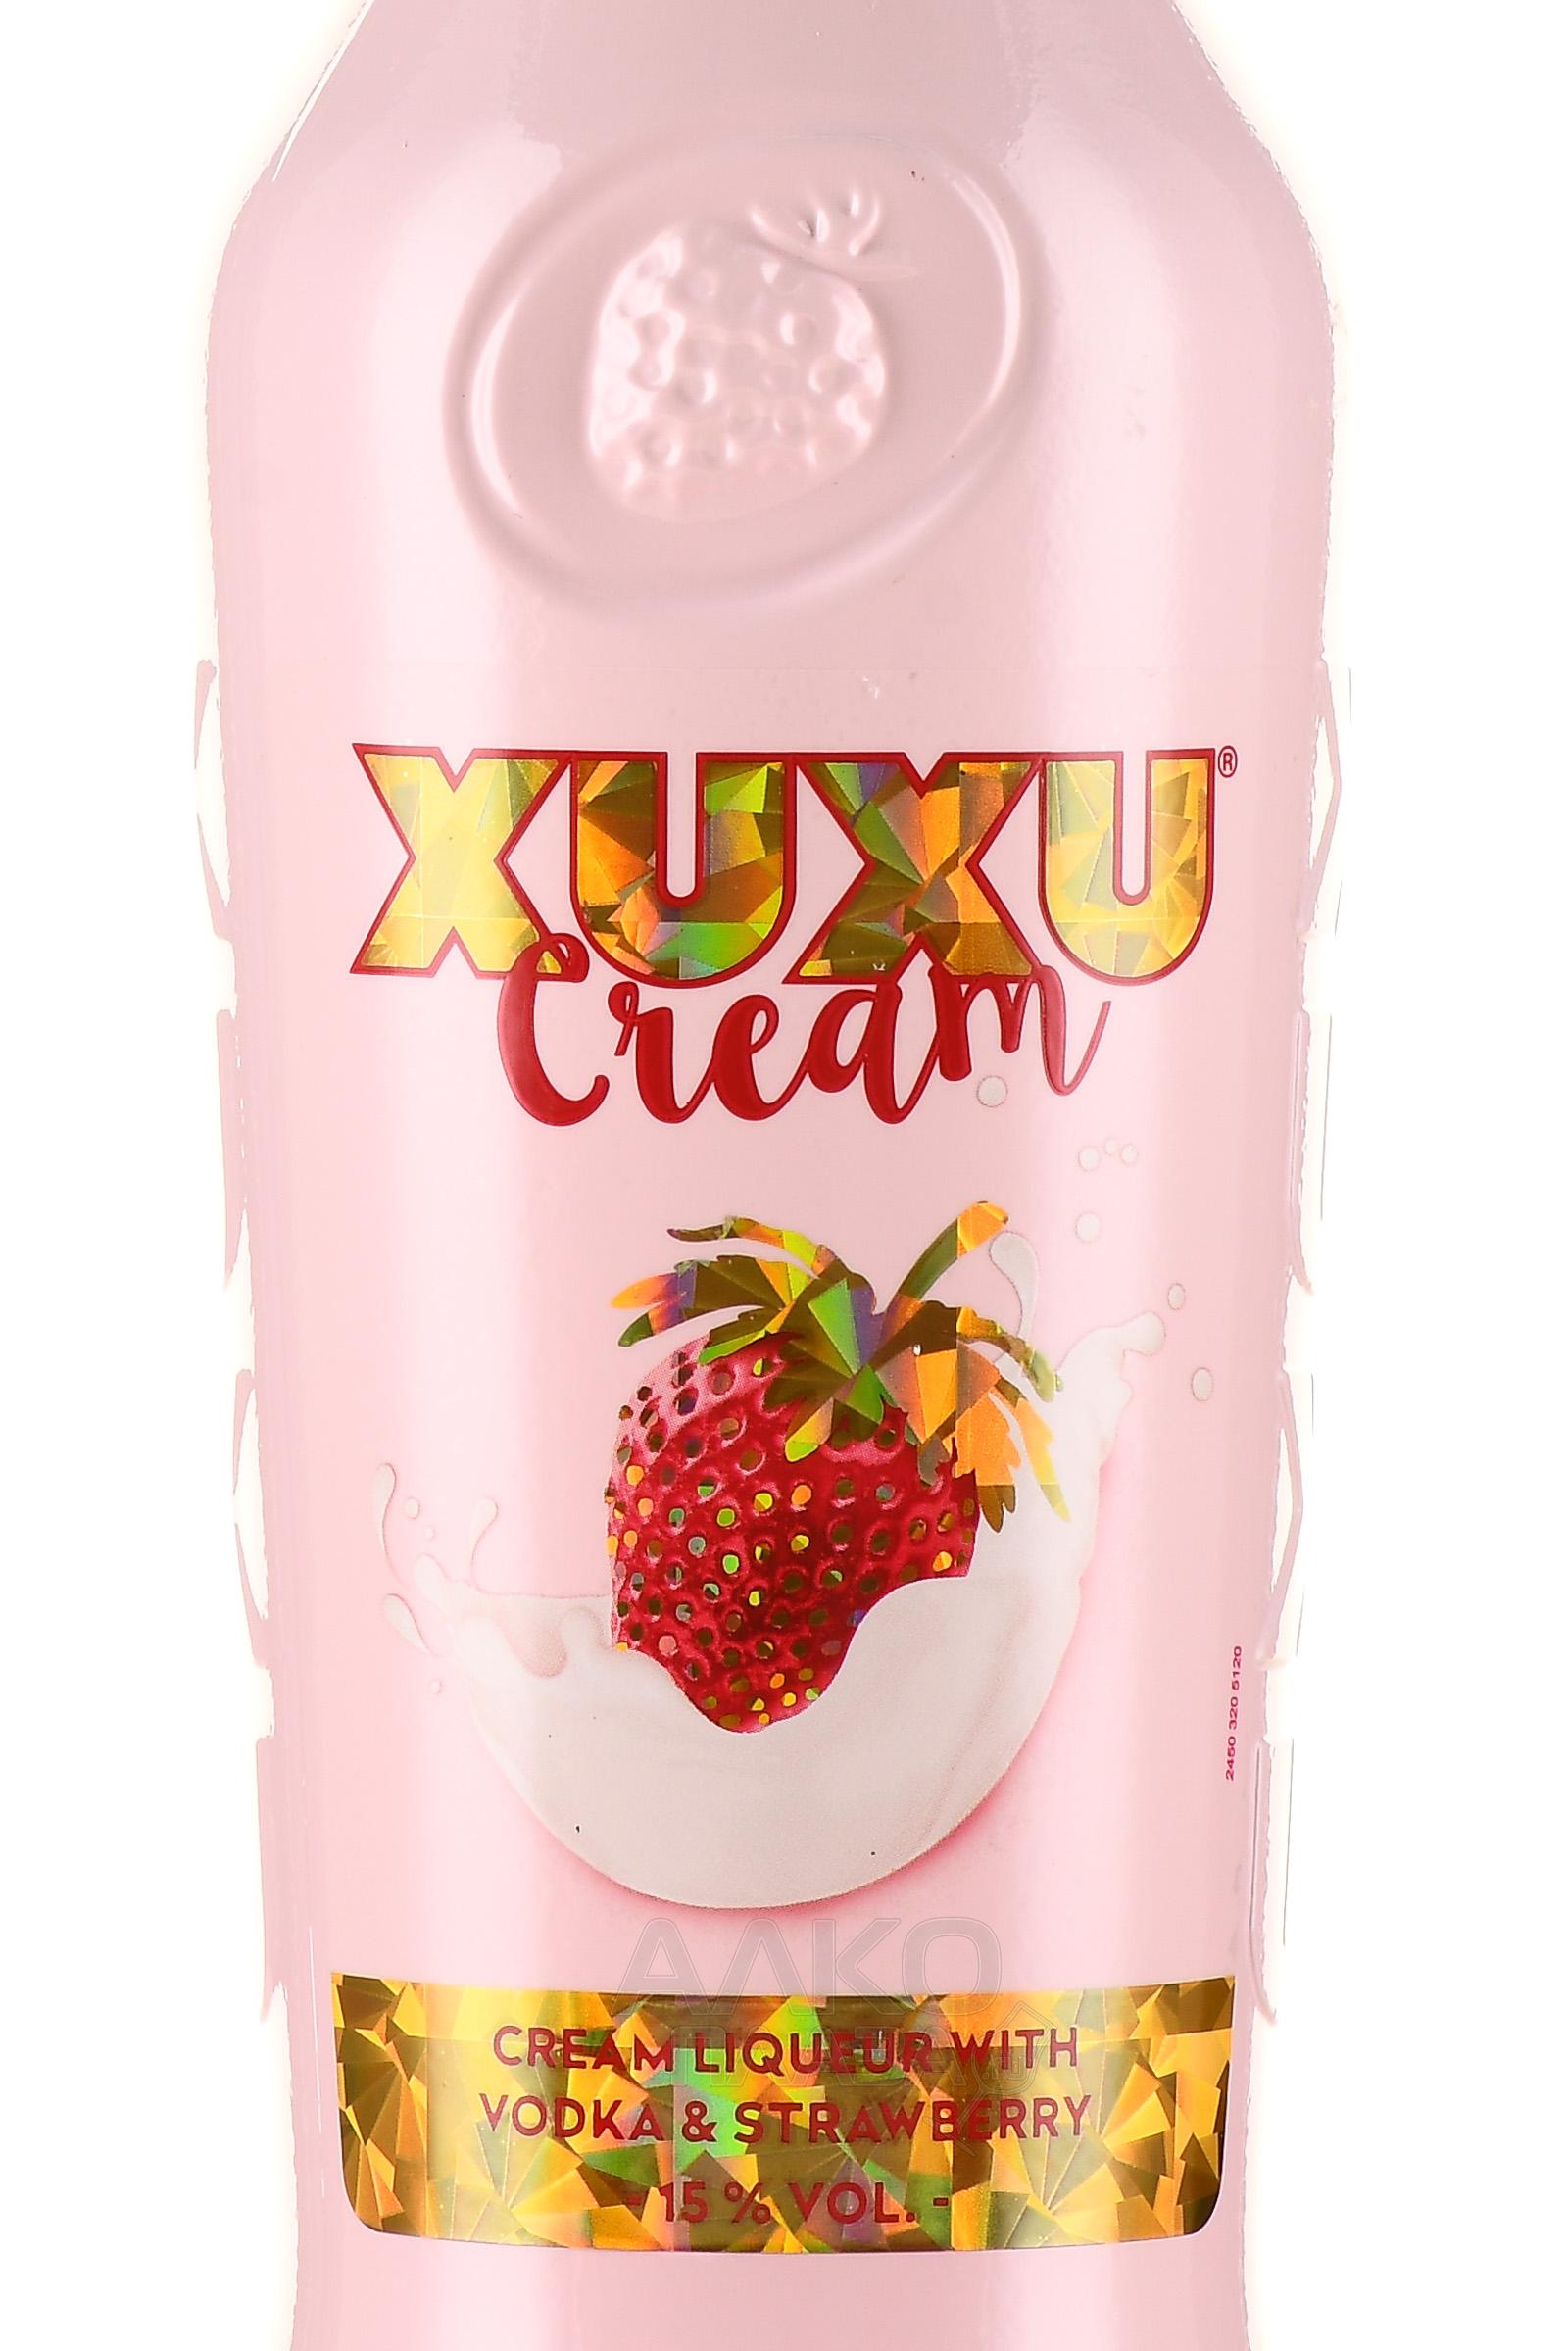 XUXU Cream - купить ликер цена 0.7 - эмульсионный л Крем Ксу-Ксу